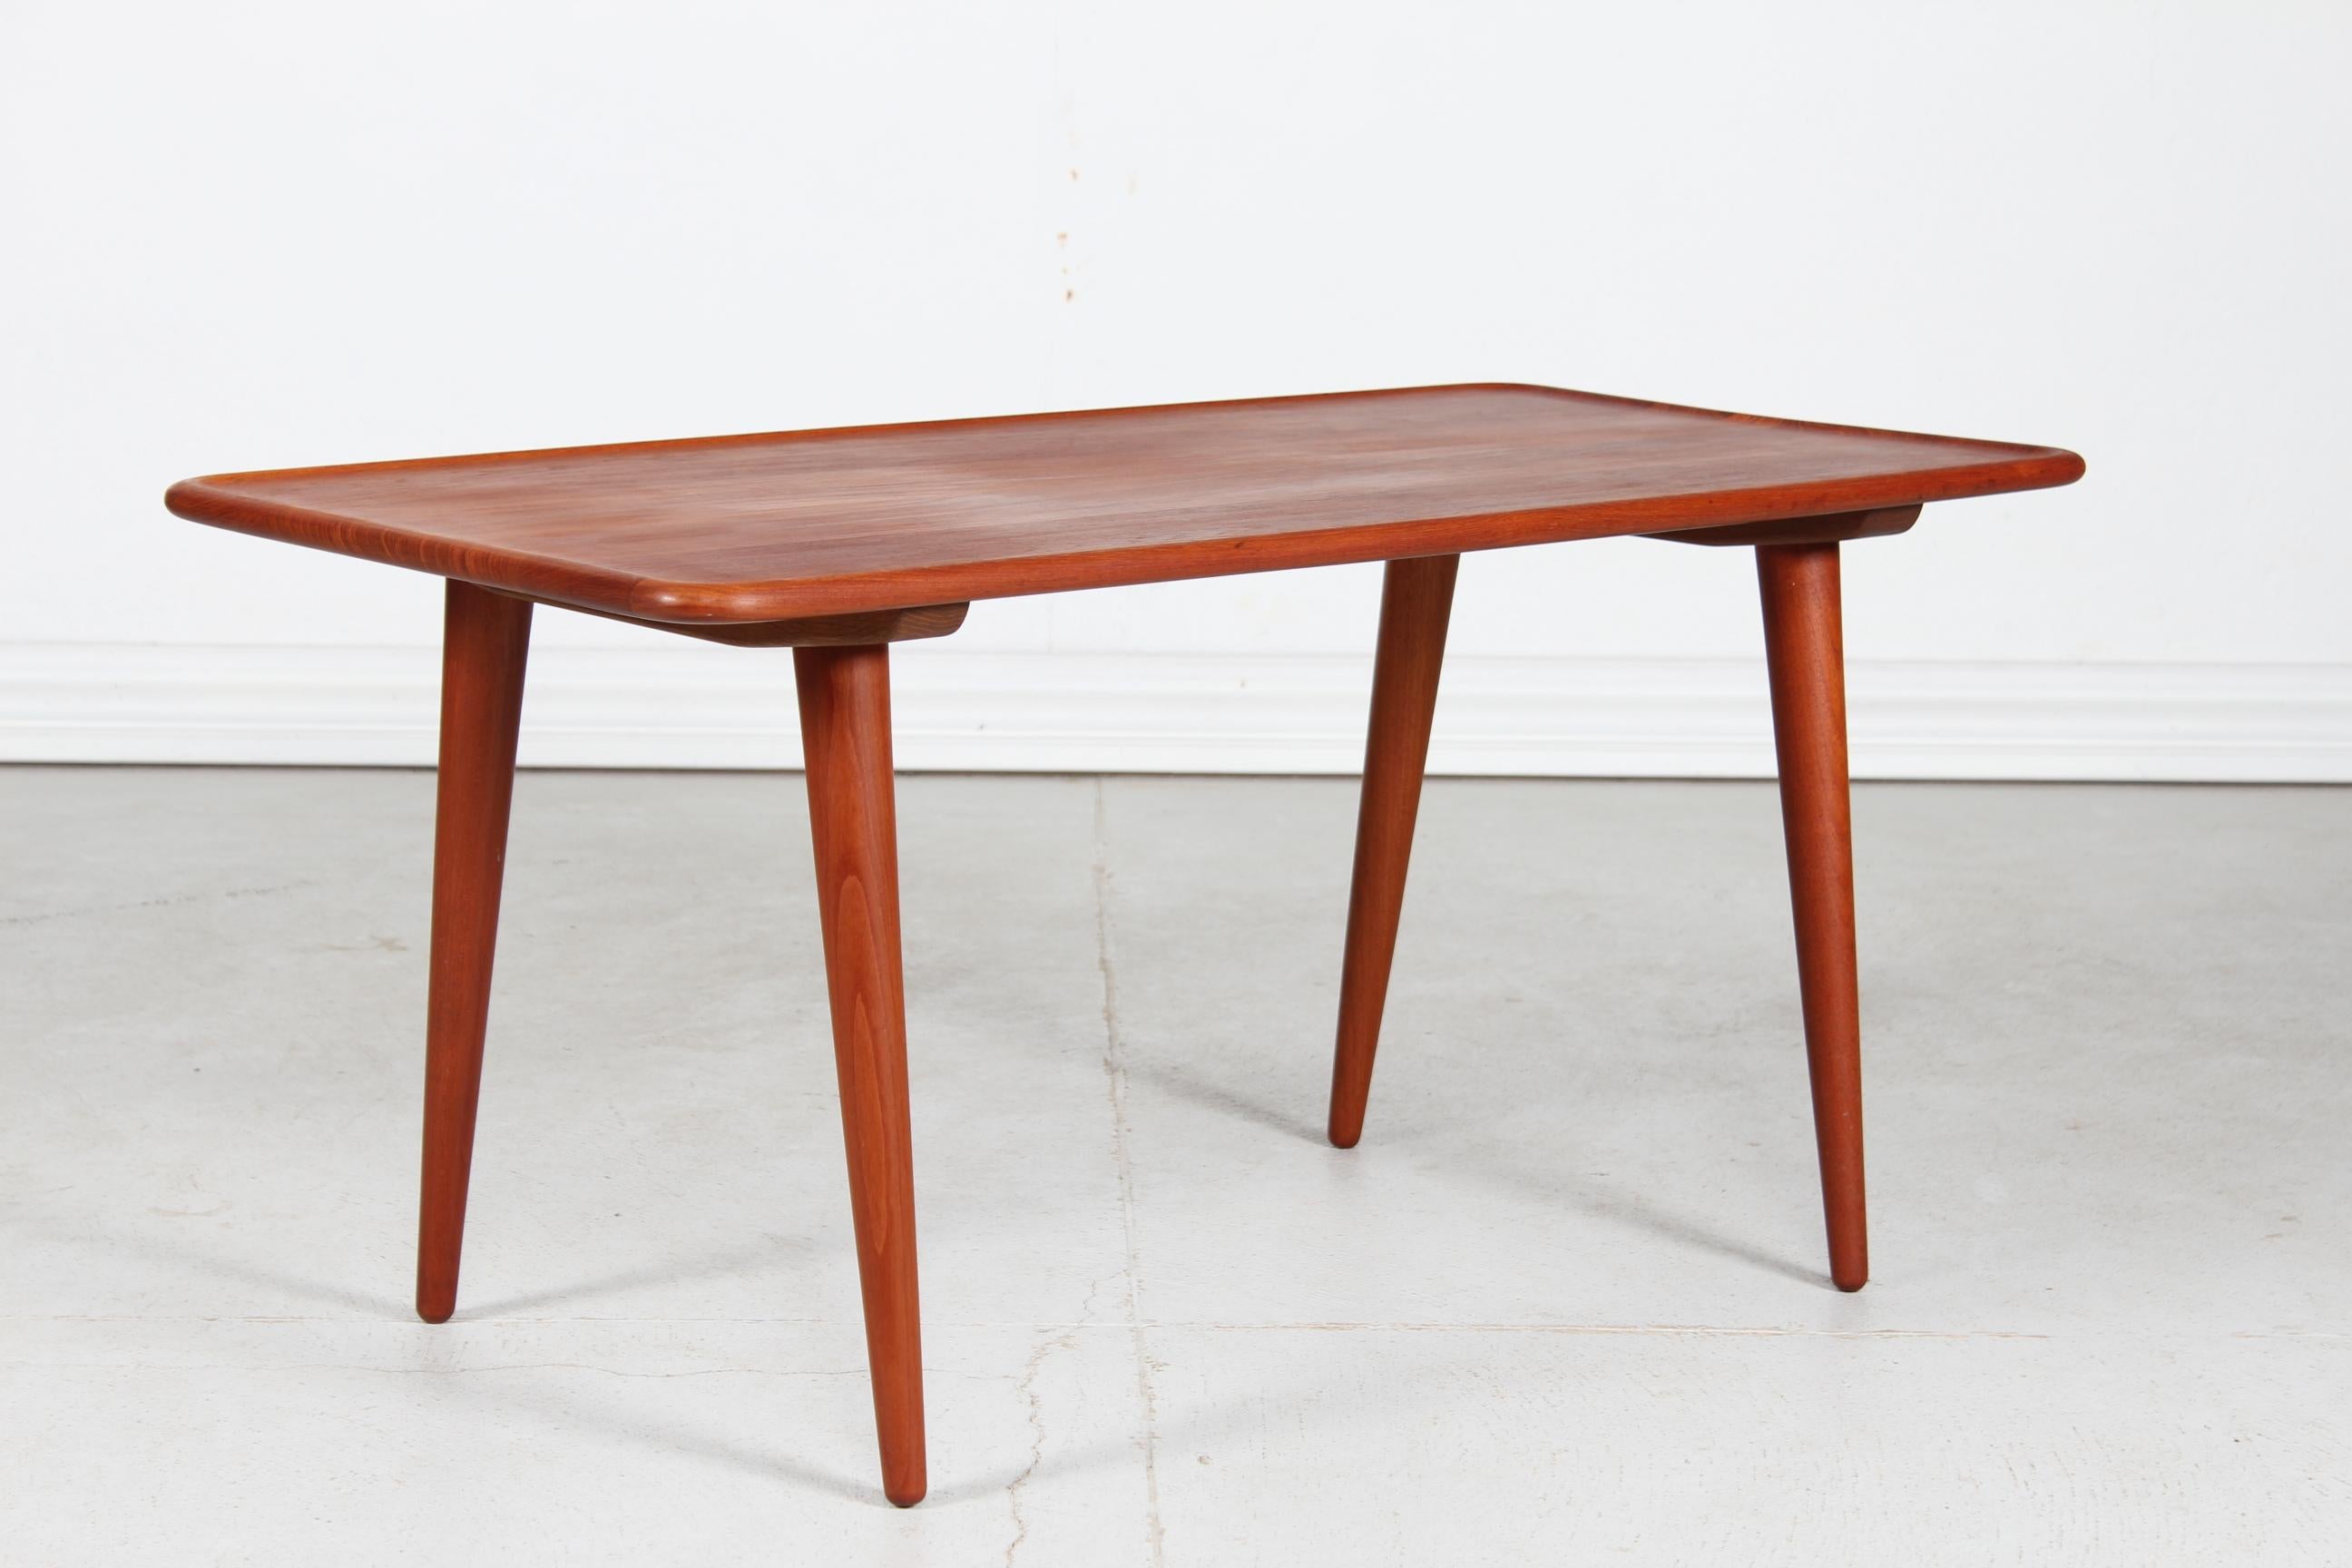 Table basse vintage modèle AT 11 de l'architecte danois Hans J. Wegner (1914-2007) fabriquée par Andreas Tuck dans les années 1950.

Table basse oblongue en teck massif traité à l'huile. Le plateau de la table a un bord surélevé et les pieds